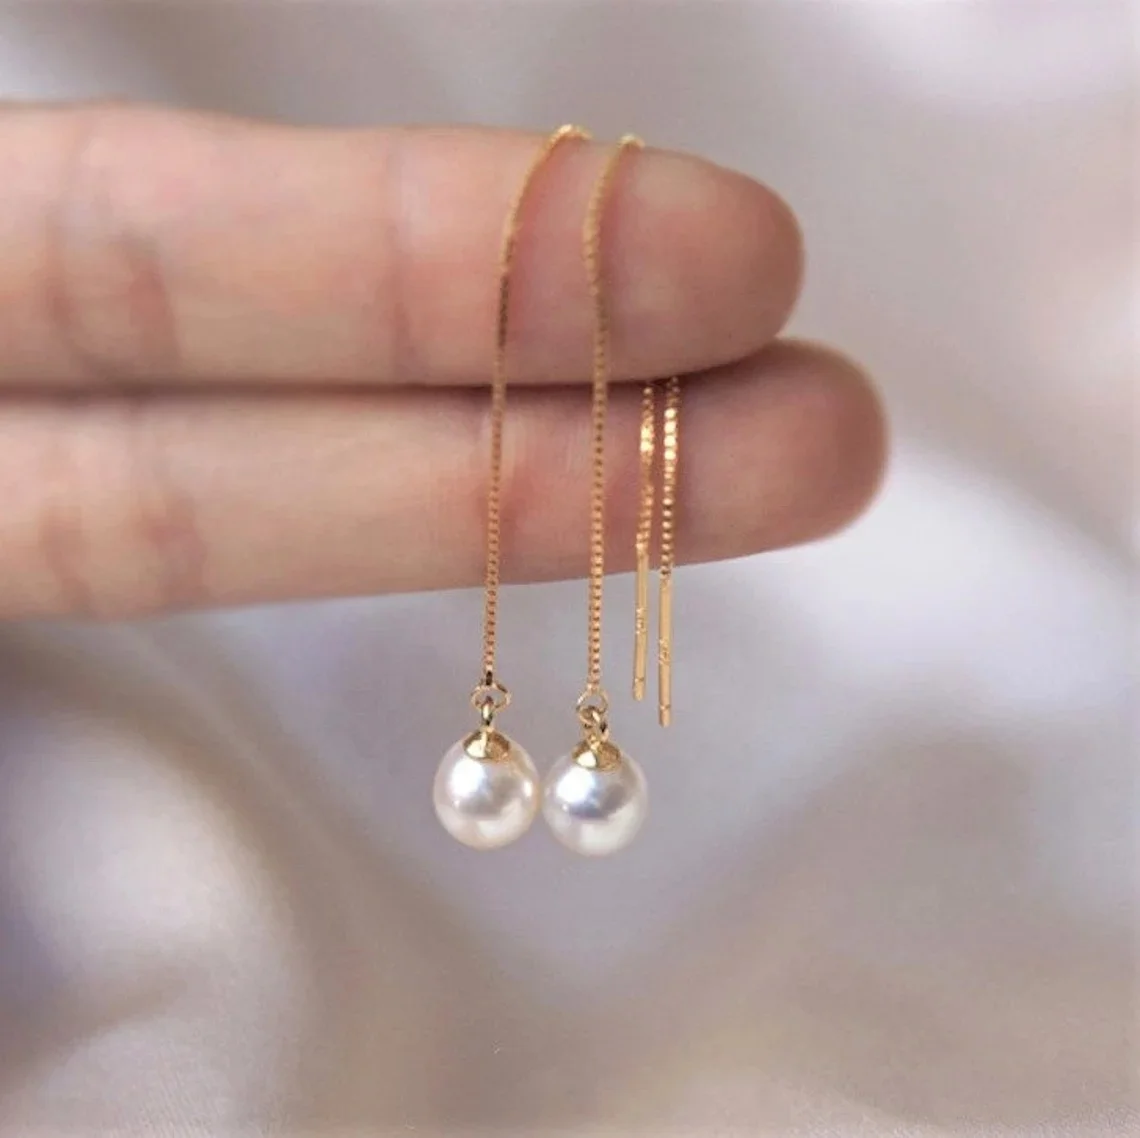 

New Elegant 925 Sterling Silver Freshwater Pearl Dangle Earring Long Chain Threader Tassel Drop Earrings Women Girls Jewelry